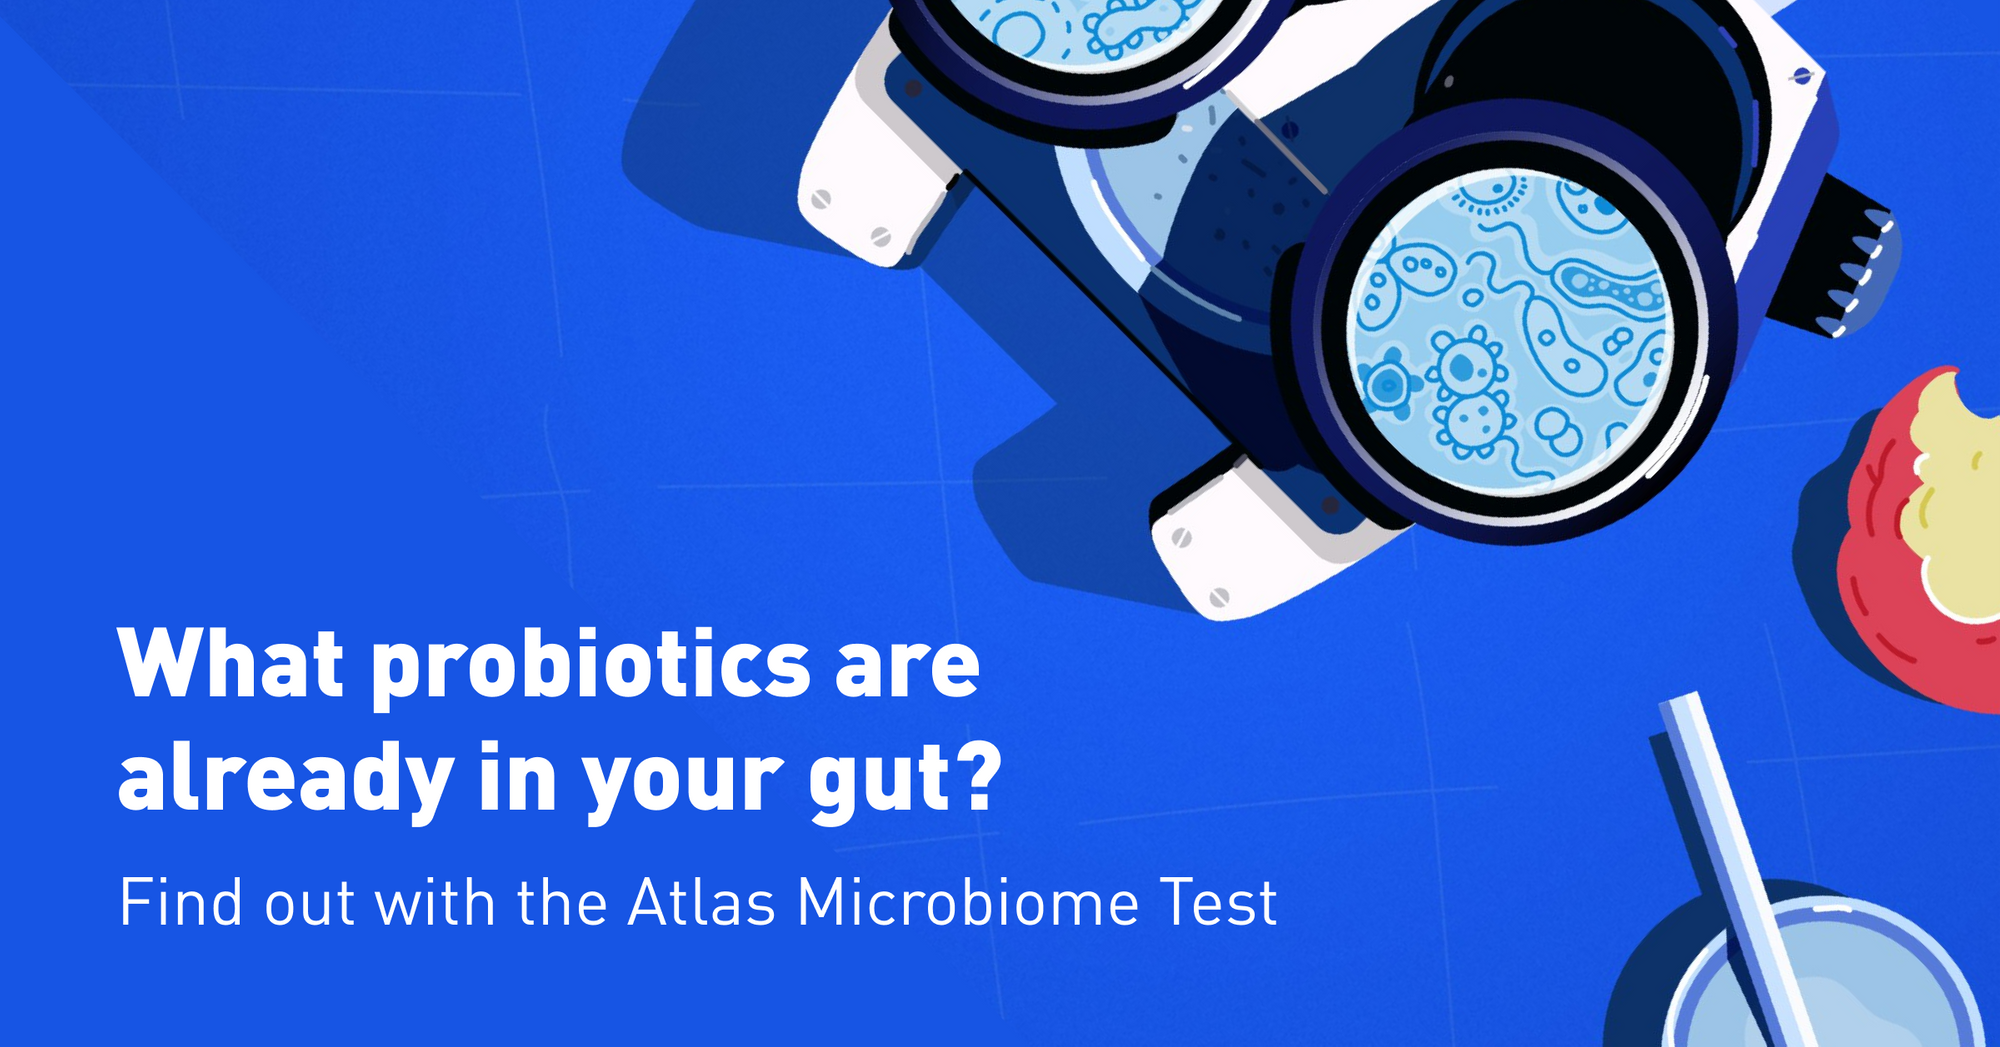 Atlas Microbiome Probiotics Test